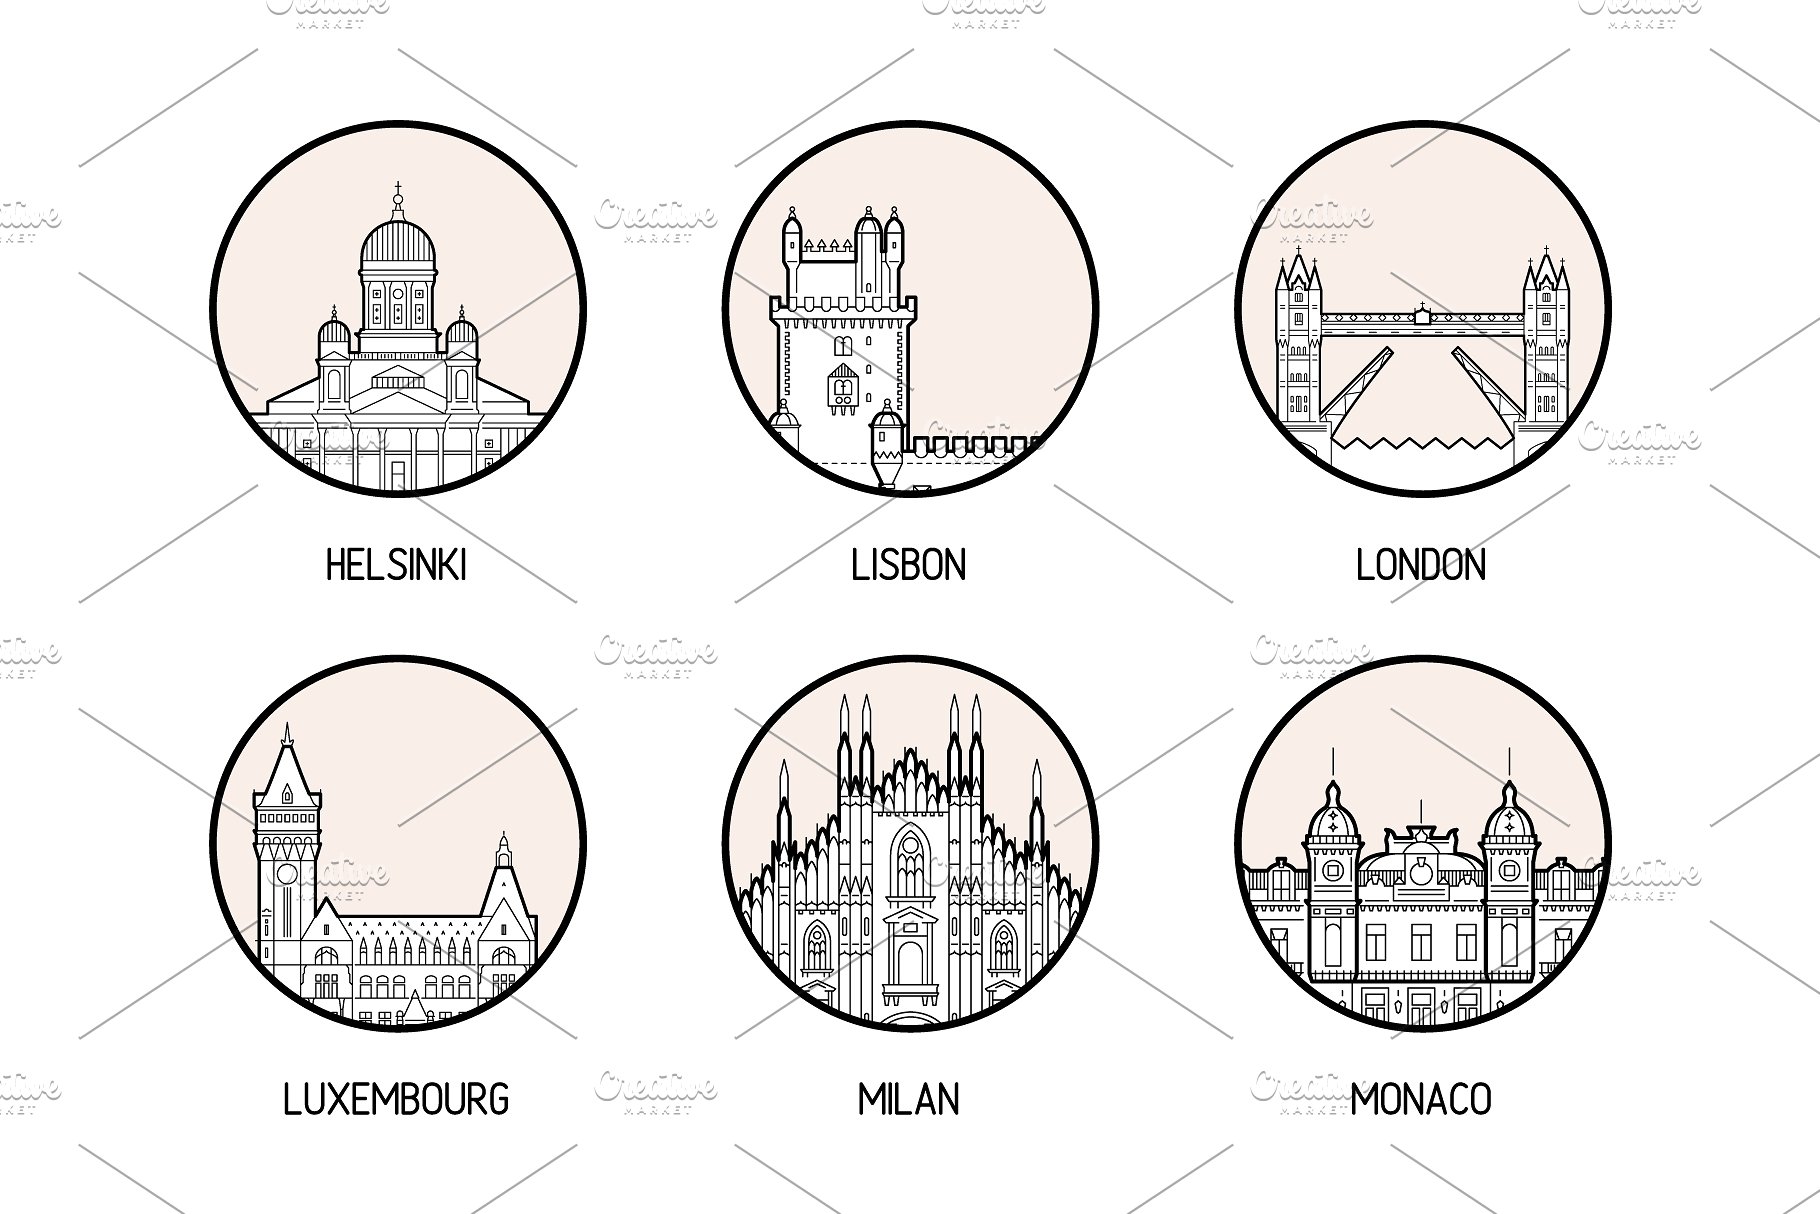 30个欧洲城市的徽章图标集合 Icons of 30 European cities插图(4)